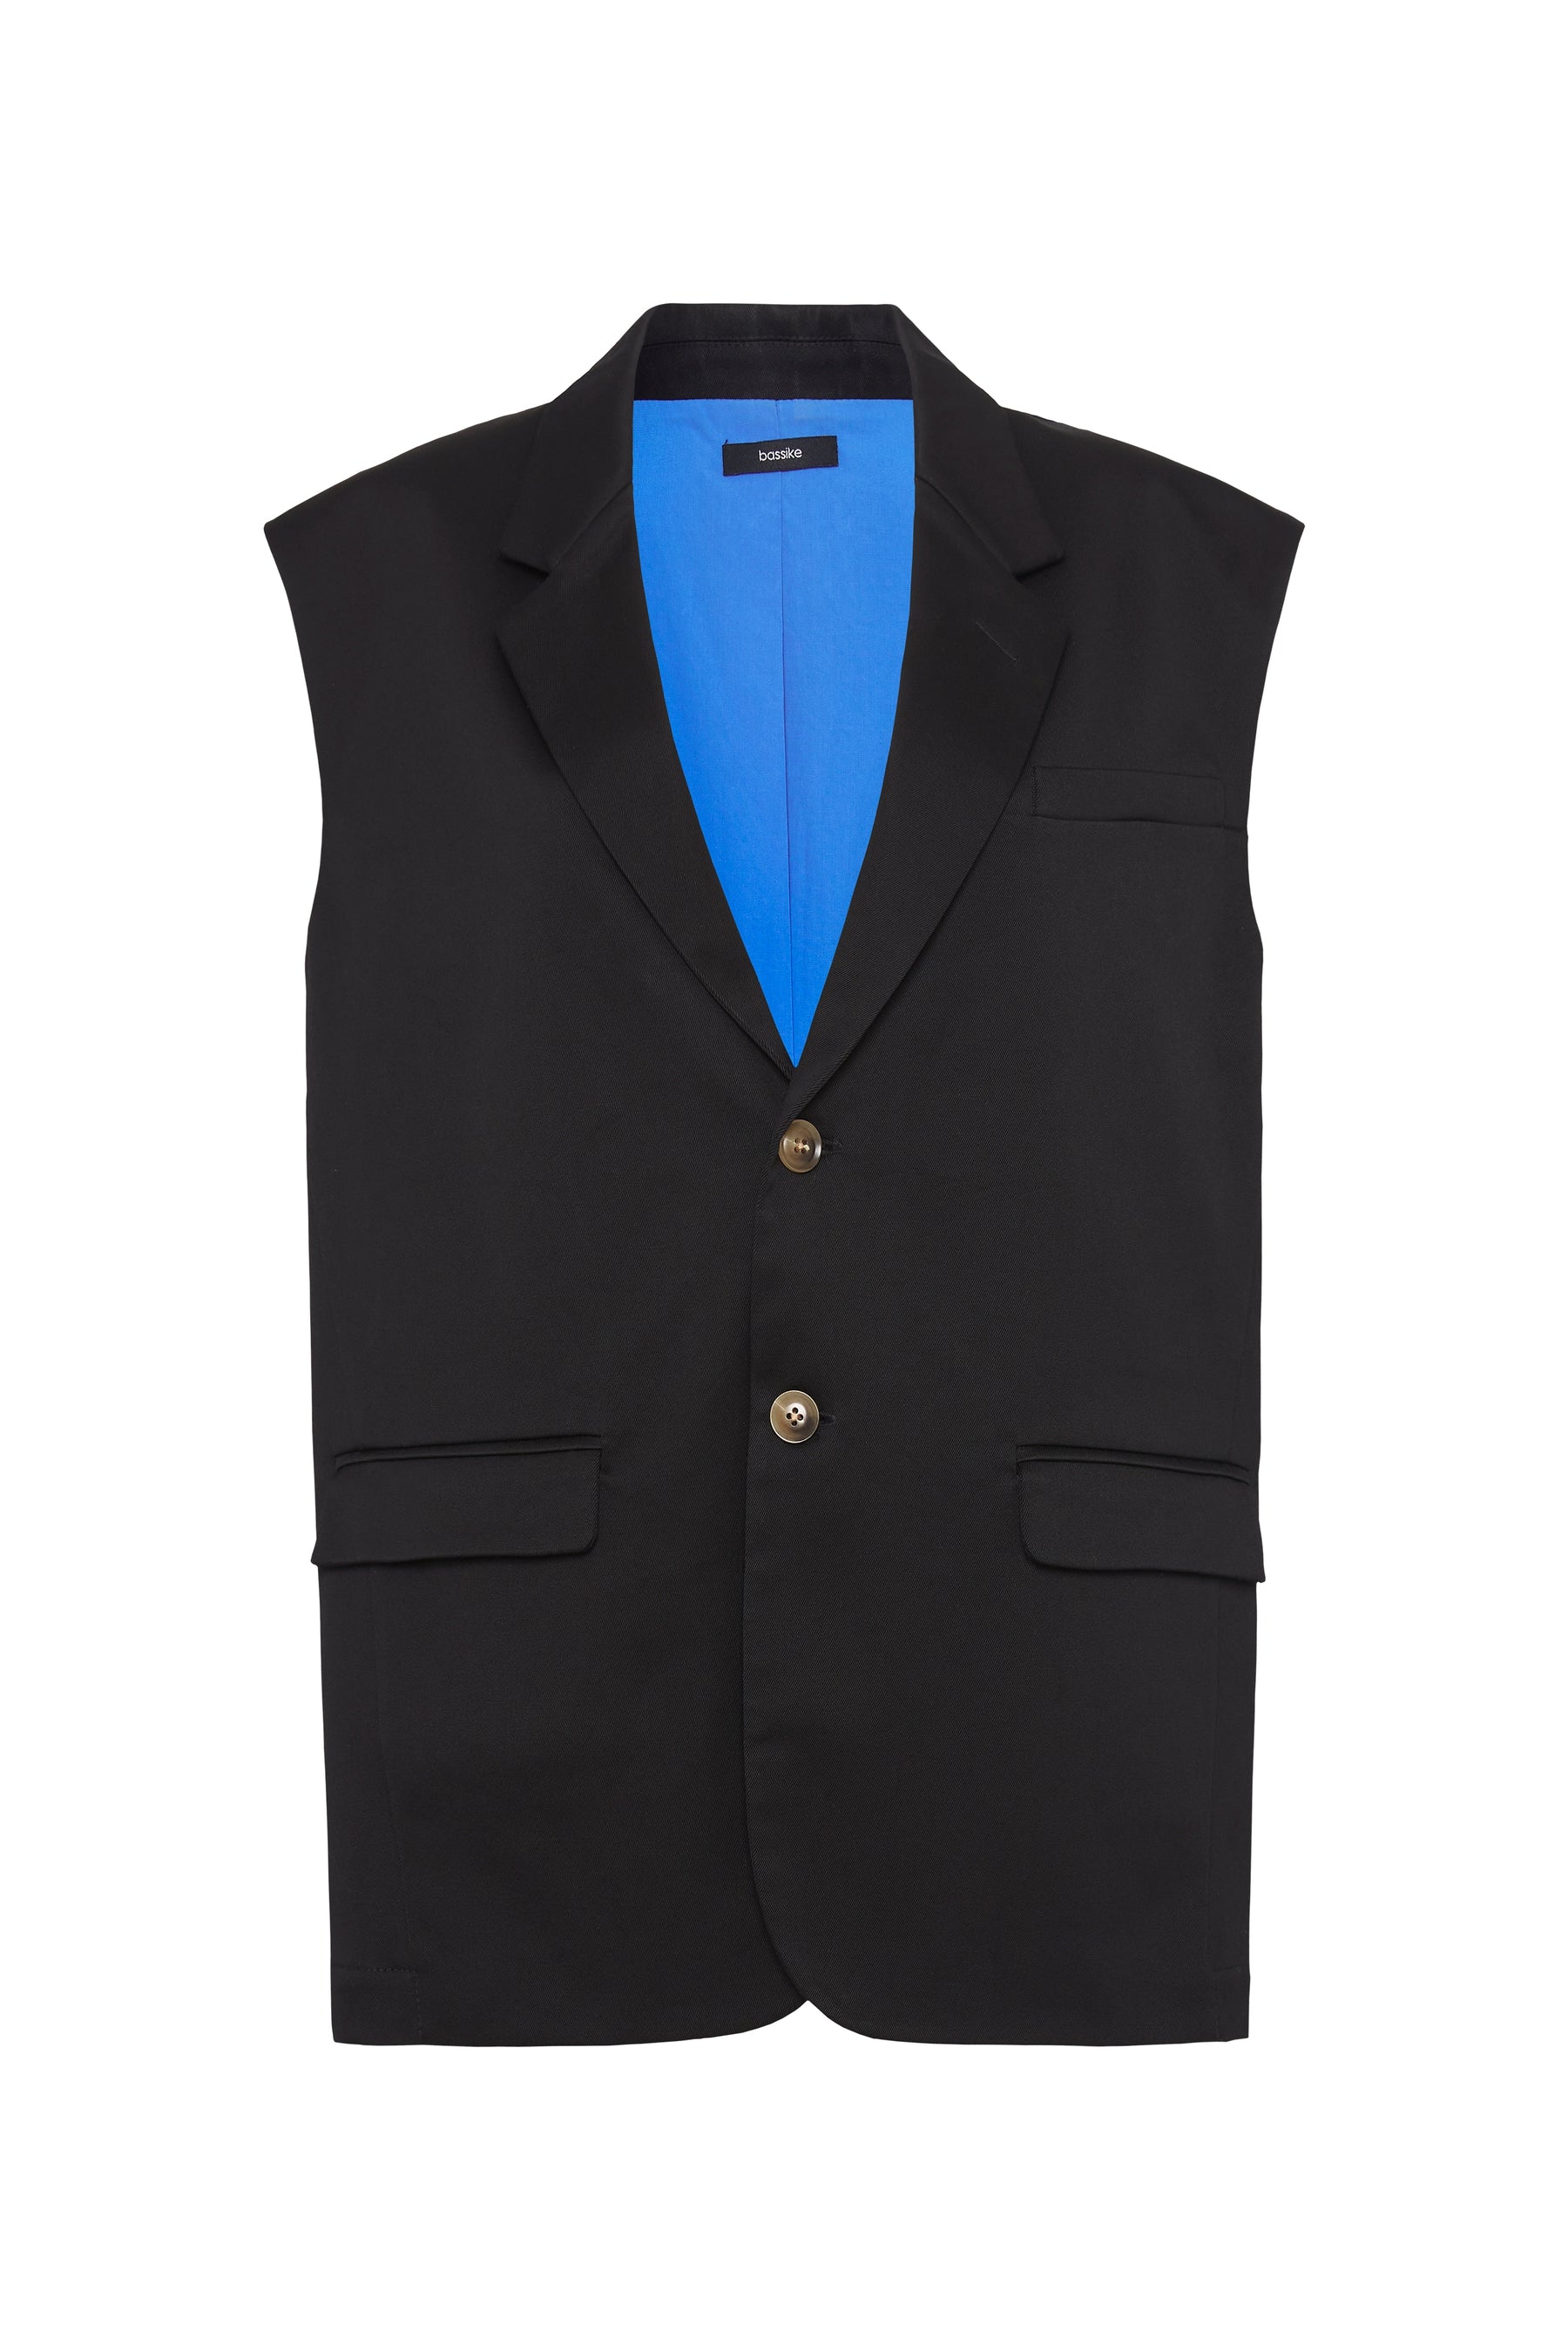 Black Sleeveless Tuxedo Jacket | Fashion, Clothes design, Tuxedo jacket